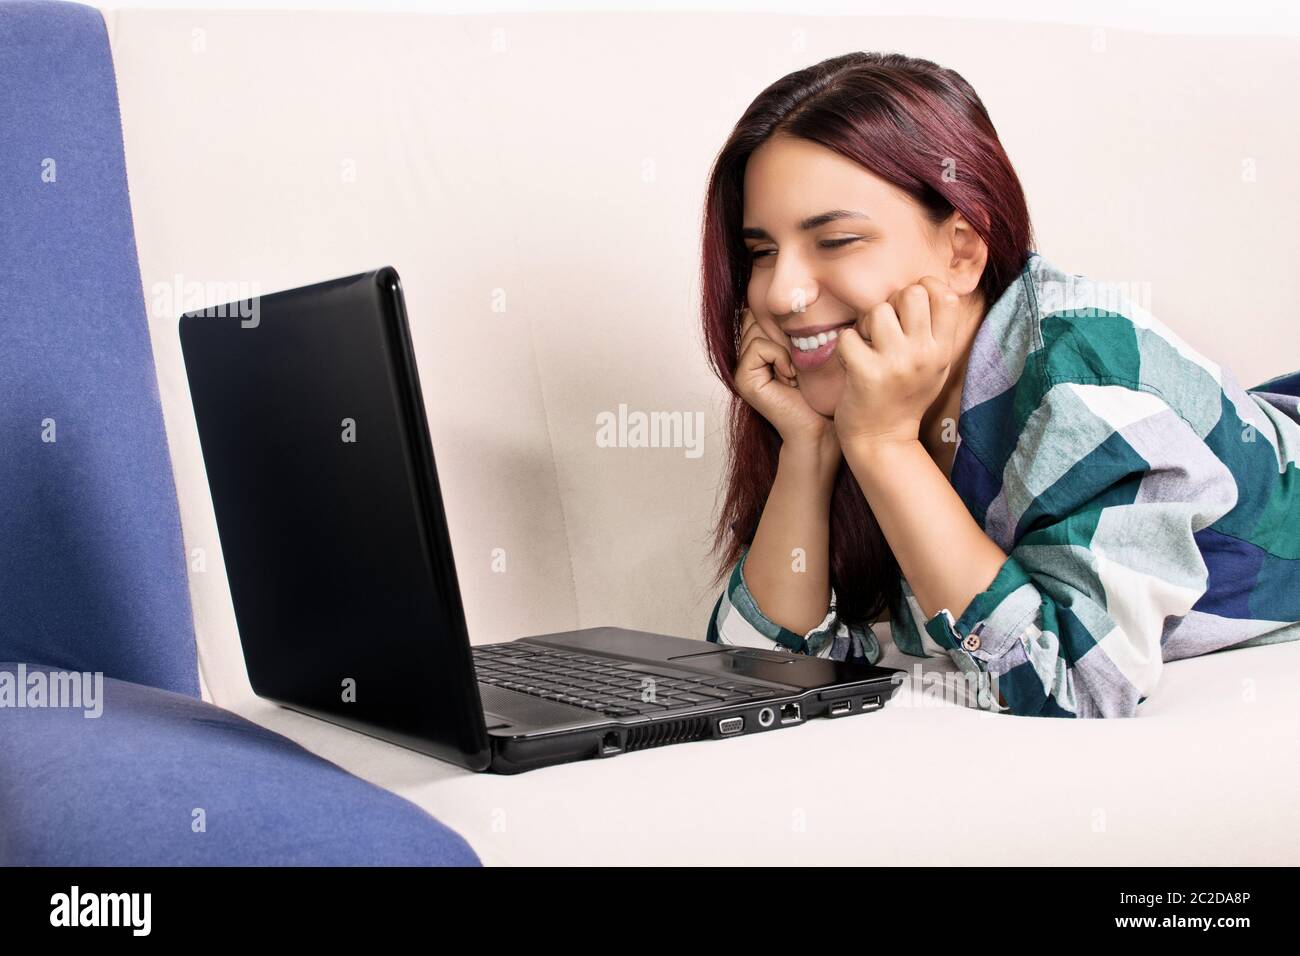 Immagine ravvicinata di un bel sorriso ragazza a casa giacente sul suo lettino, guardando una schermata di un laptop. Sono contento quando parlo ai miei amici preferiti. Foto Stock